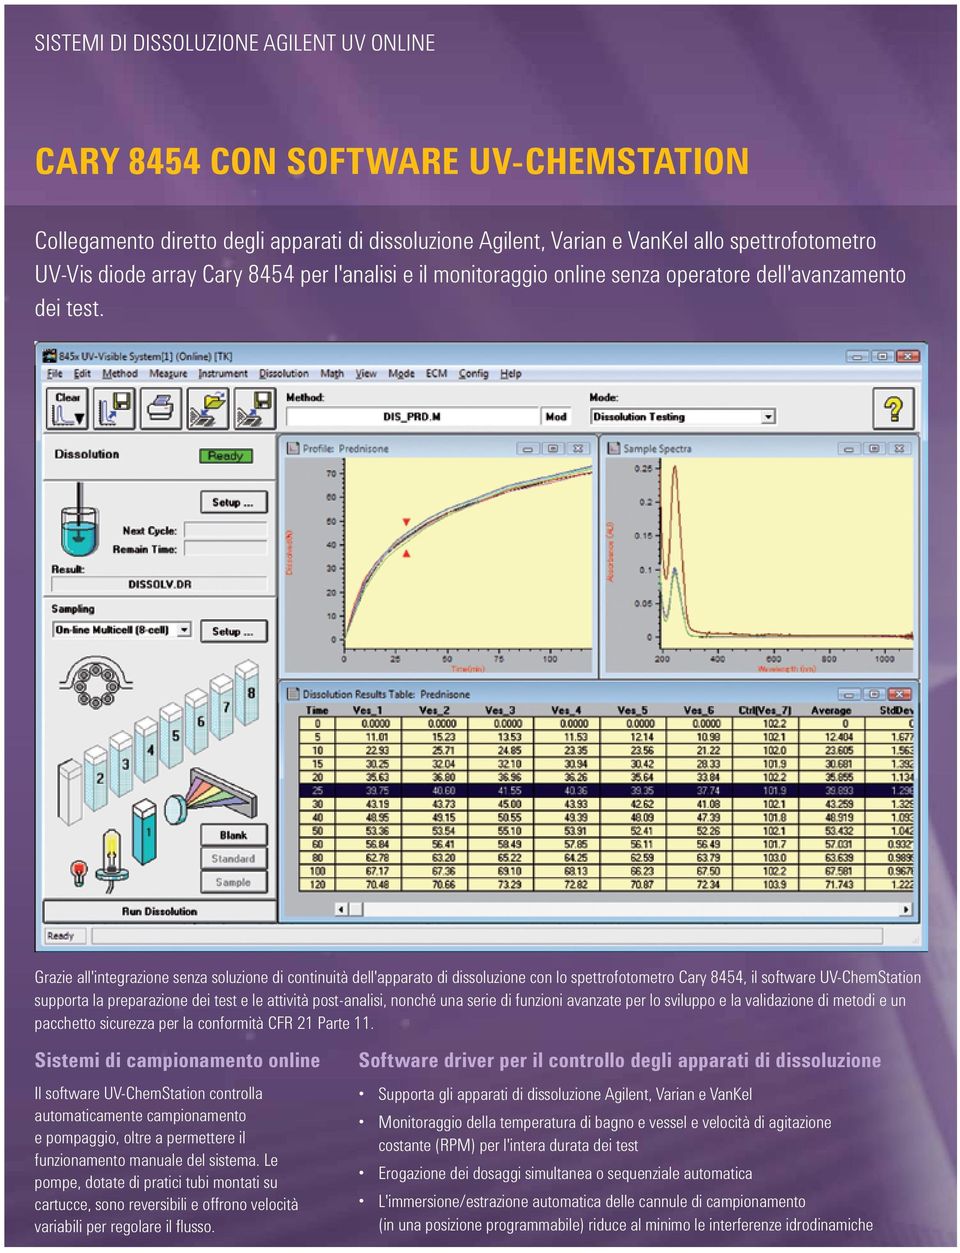 Grazie all'integrazione senza soluzione di continuità dell'apparato di dissoluzione con lo spettrofotometro Cary 8454, il software UV-ChemStation supporta la preparazione dei test e le attività